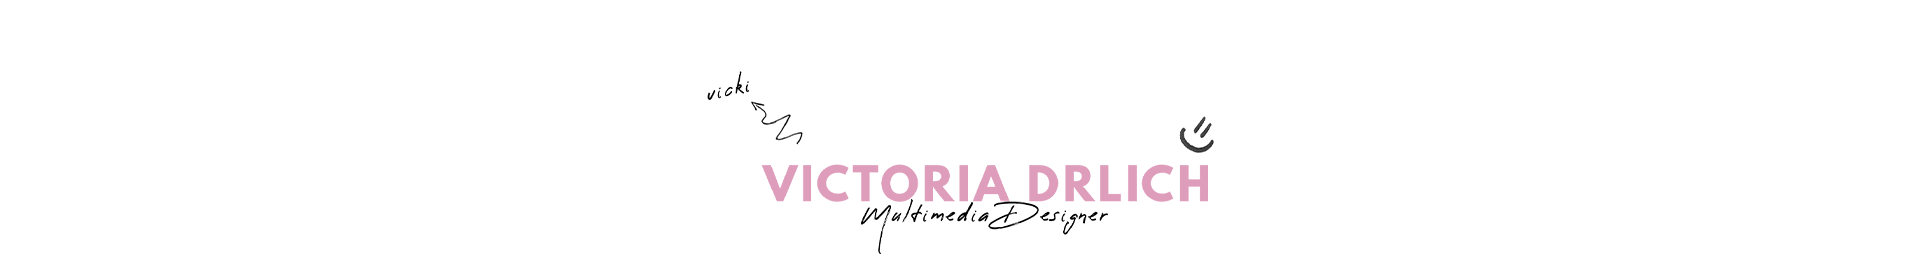 Victoria Drlich's profile banner